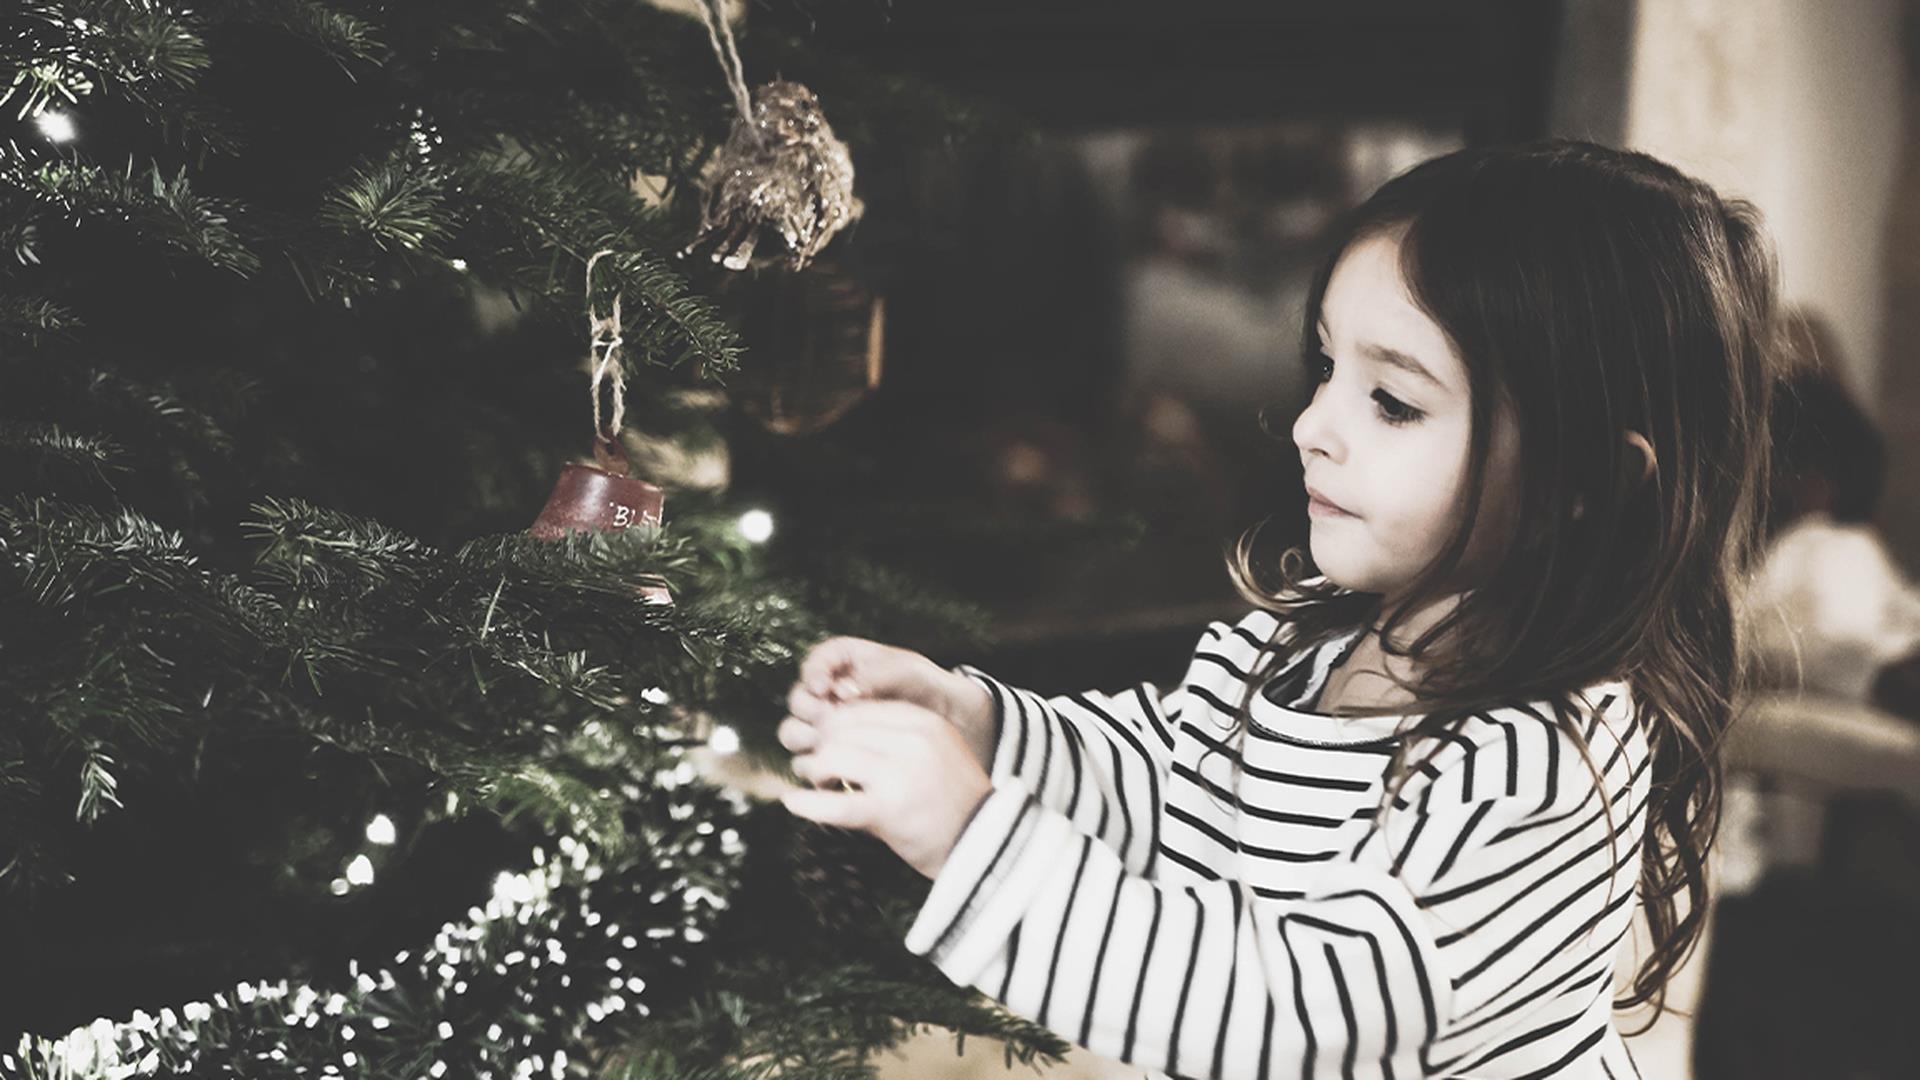 Regali Di Natale Per Bimba 8 Anni.Natale 2019 20 Idee Regalo Bambina Dai 4 Agli 8 Anni